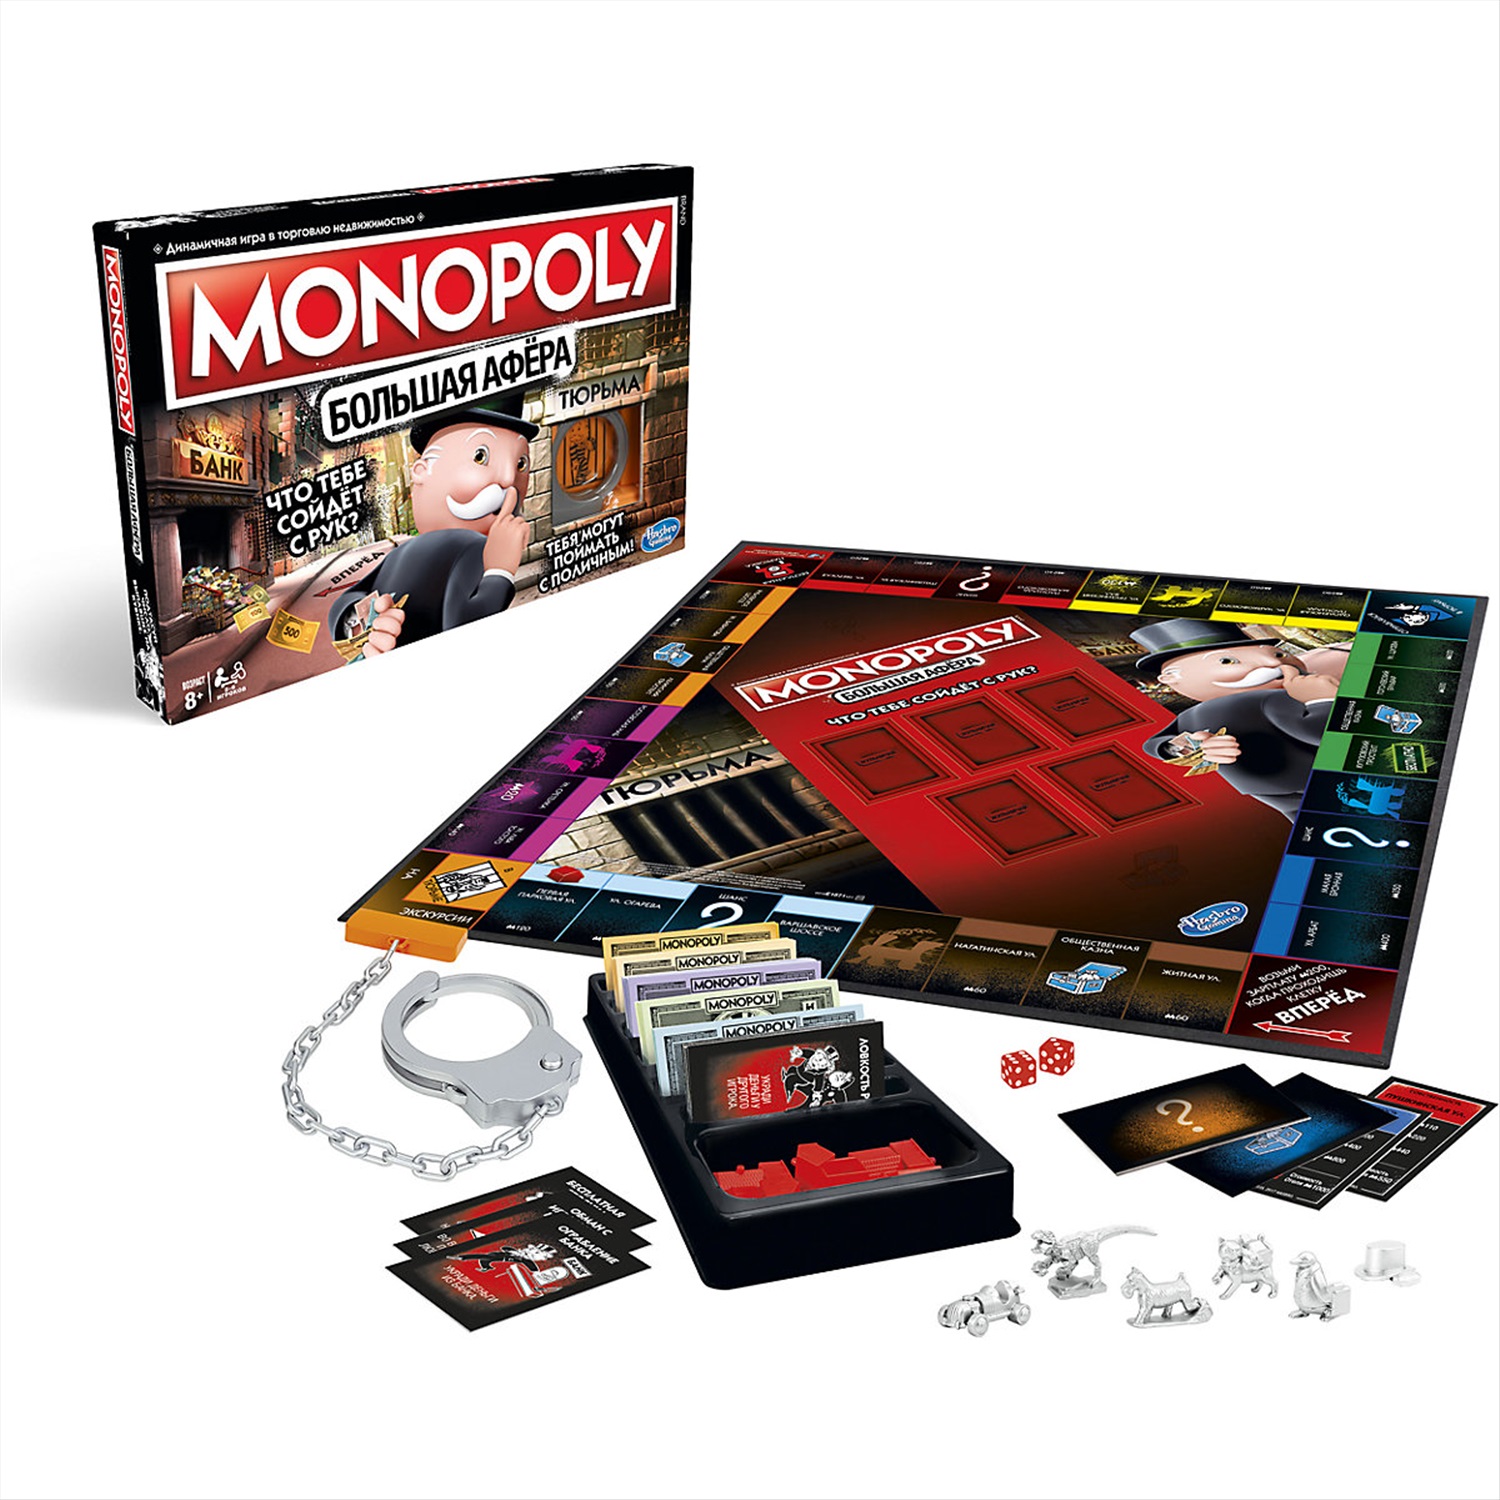 Monopoly играть. Настольная игра Hasbro Монополия большая афера. Монополия игра большая афёра Hasbro. Настольная игра Monopoly большая афера. Монополия Хасбро большая афера.